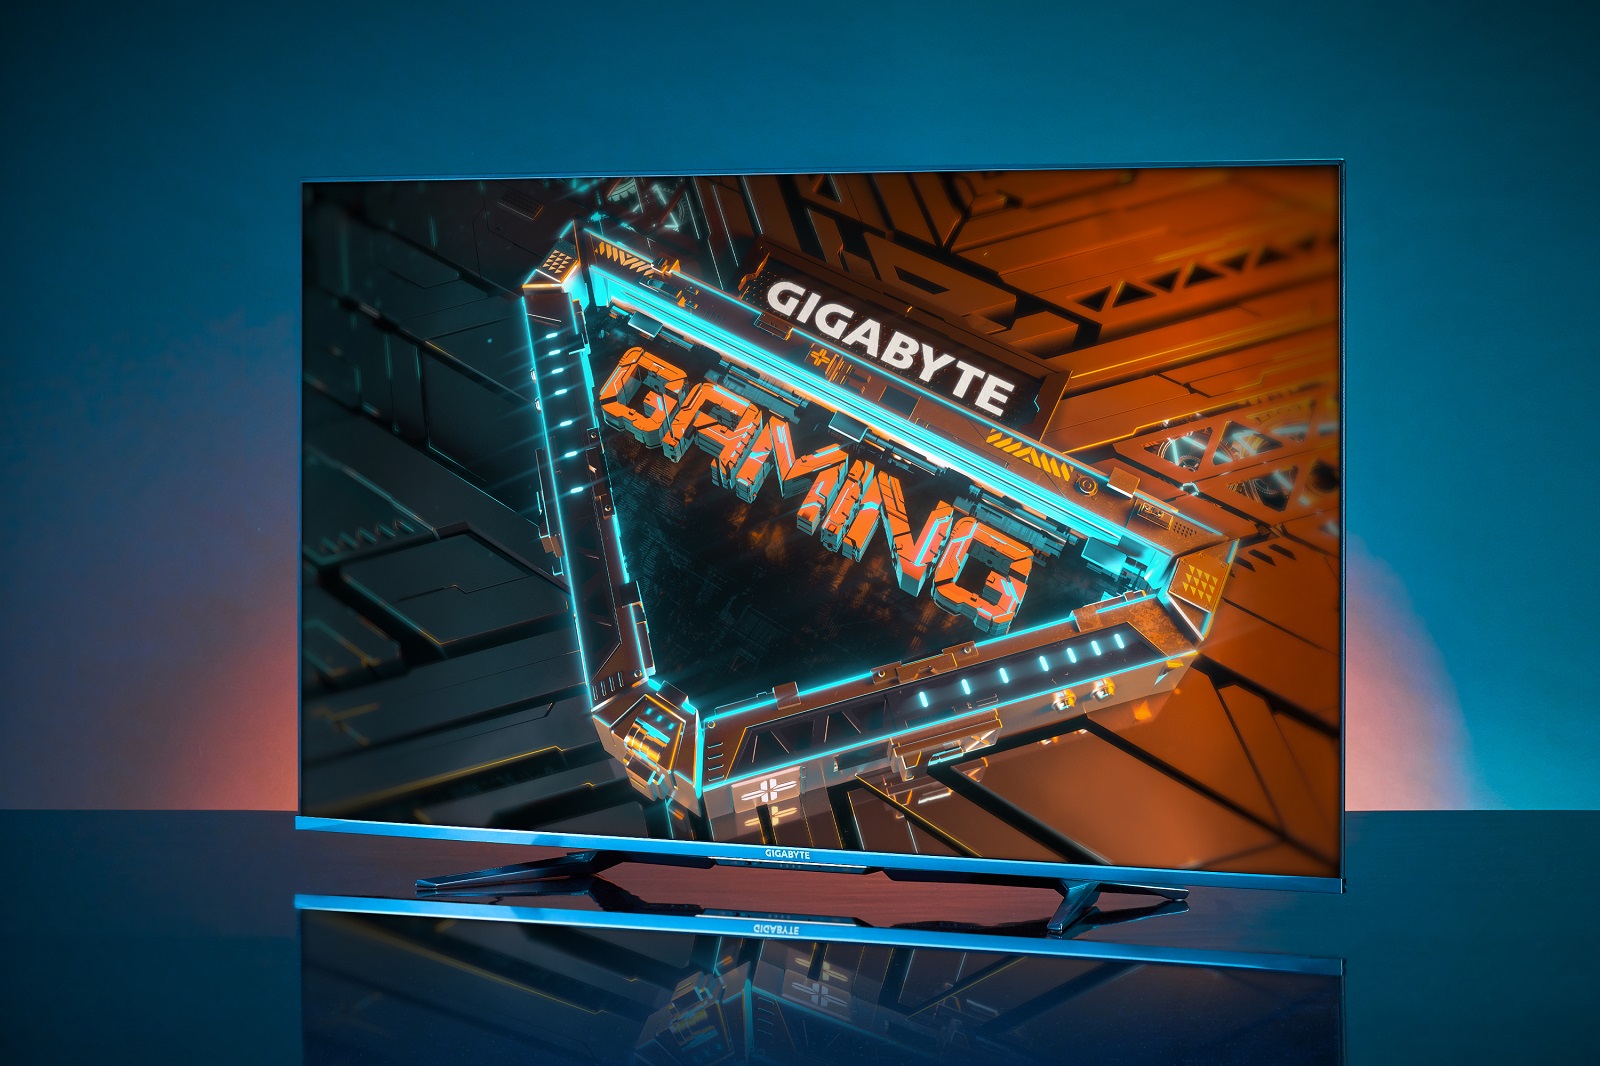 GIGABYTE GEFORCE SHOW: "Định hình lại cuộc chơi" với loạt sản phẩm đẳng cấp